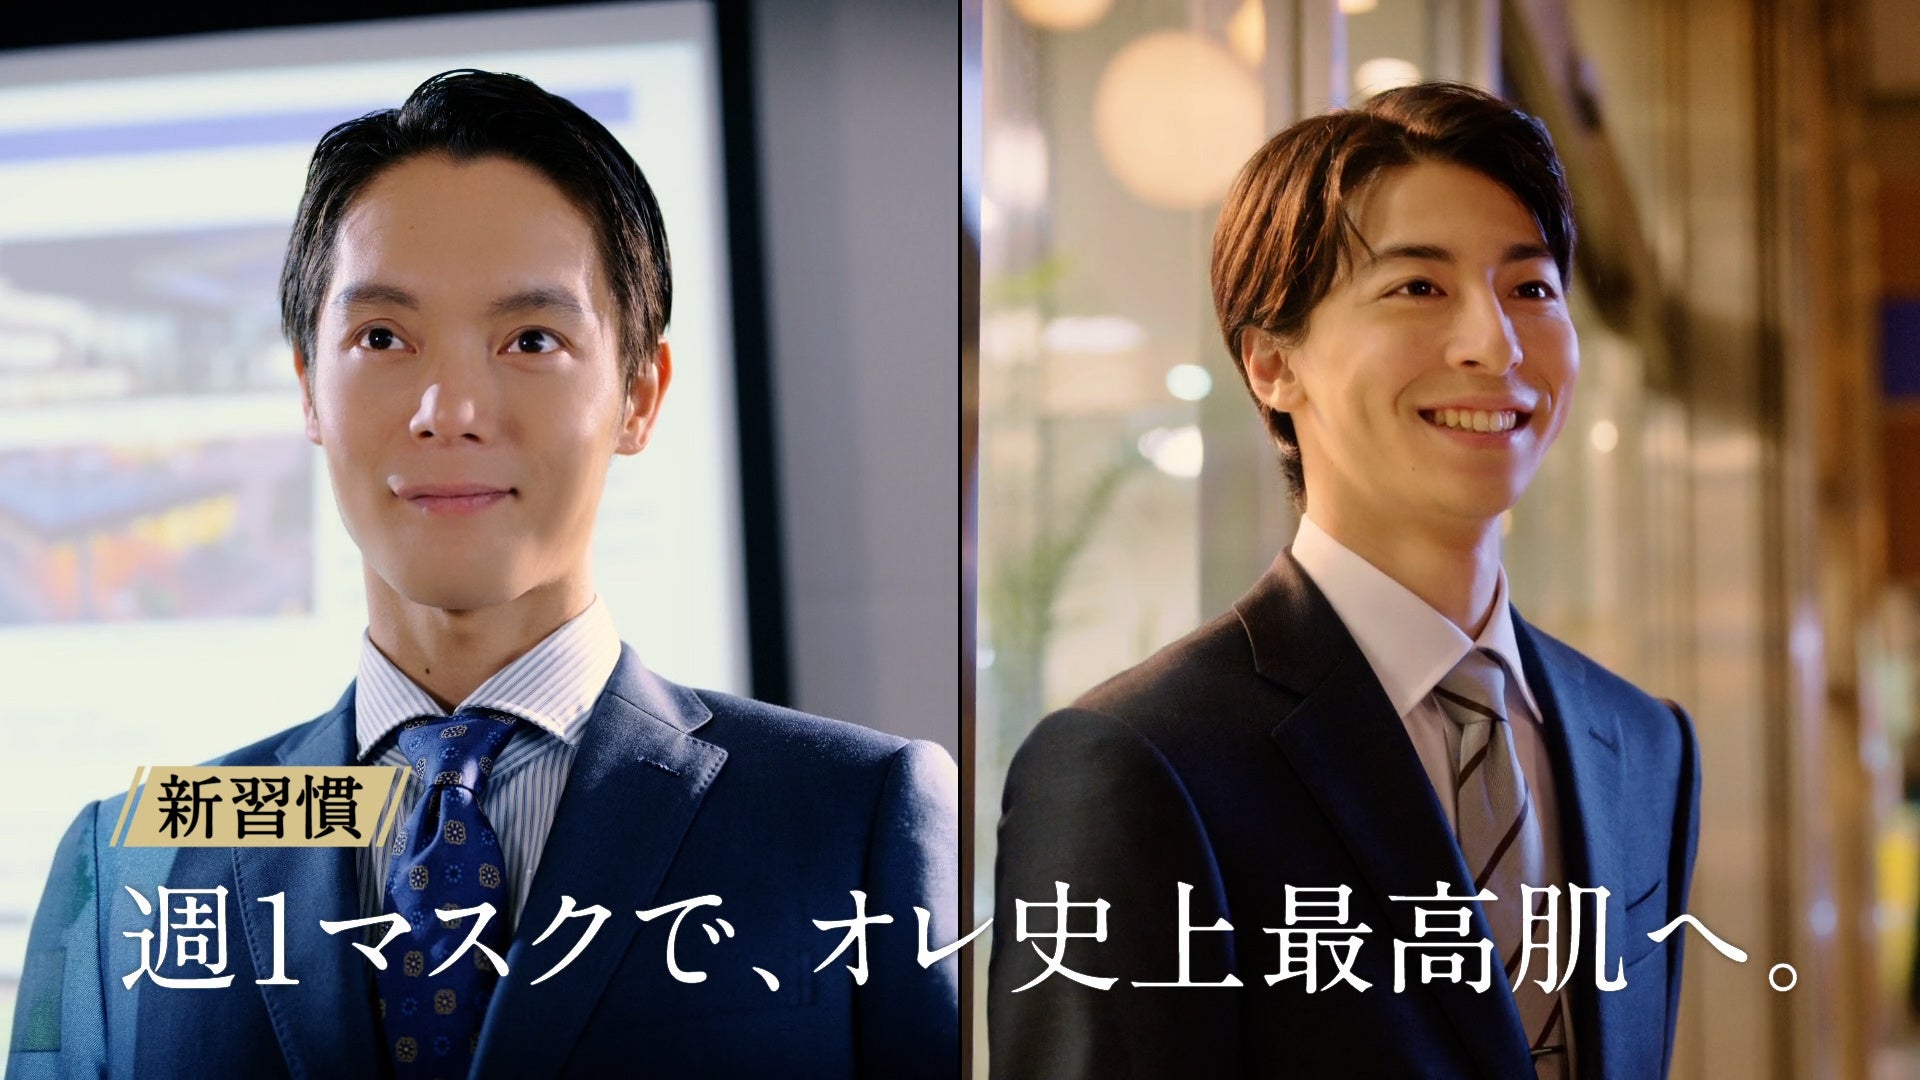 窪田正孝さんと高杉真宙さんが出演「uno（ウーノ）」ビジネスマンCMシリーズ最新作！ 週1マスク習慣で、窪田さんと高杉さんがプレゼンもデートも完璧に！？